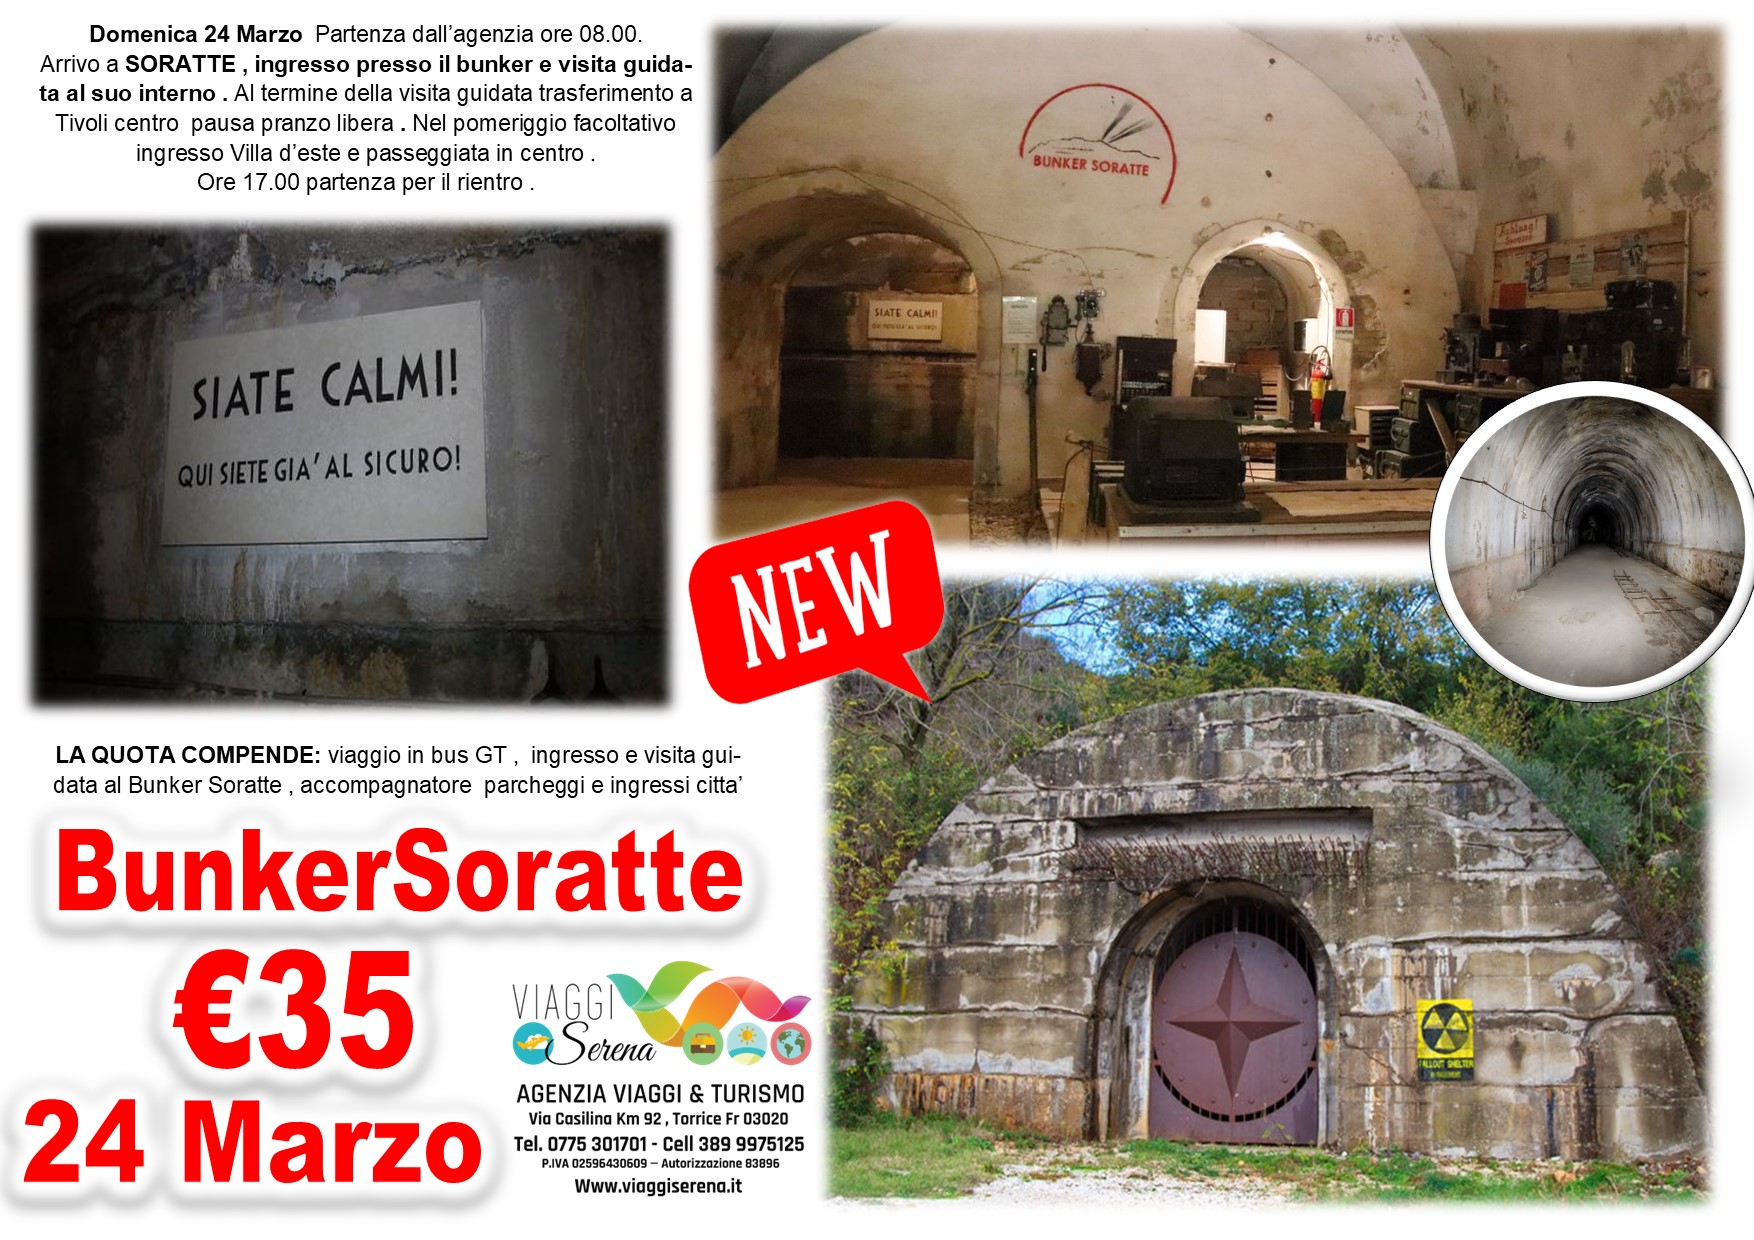 Viaggi di gruppo: Bunker Soratte 24 Marzo €35,00